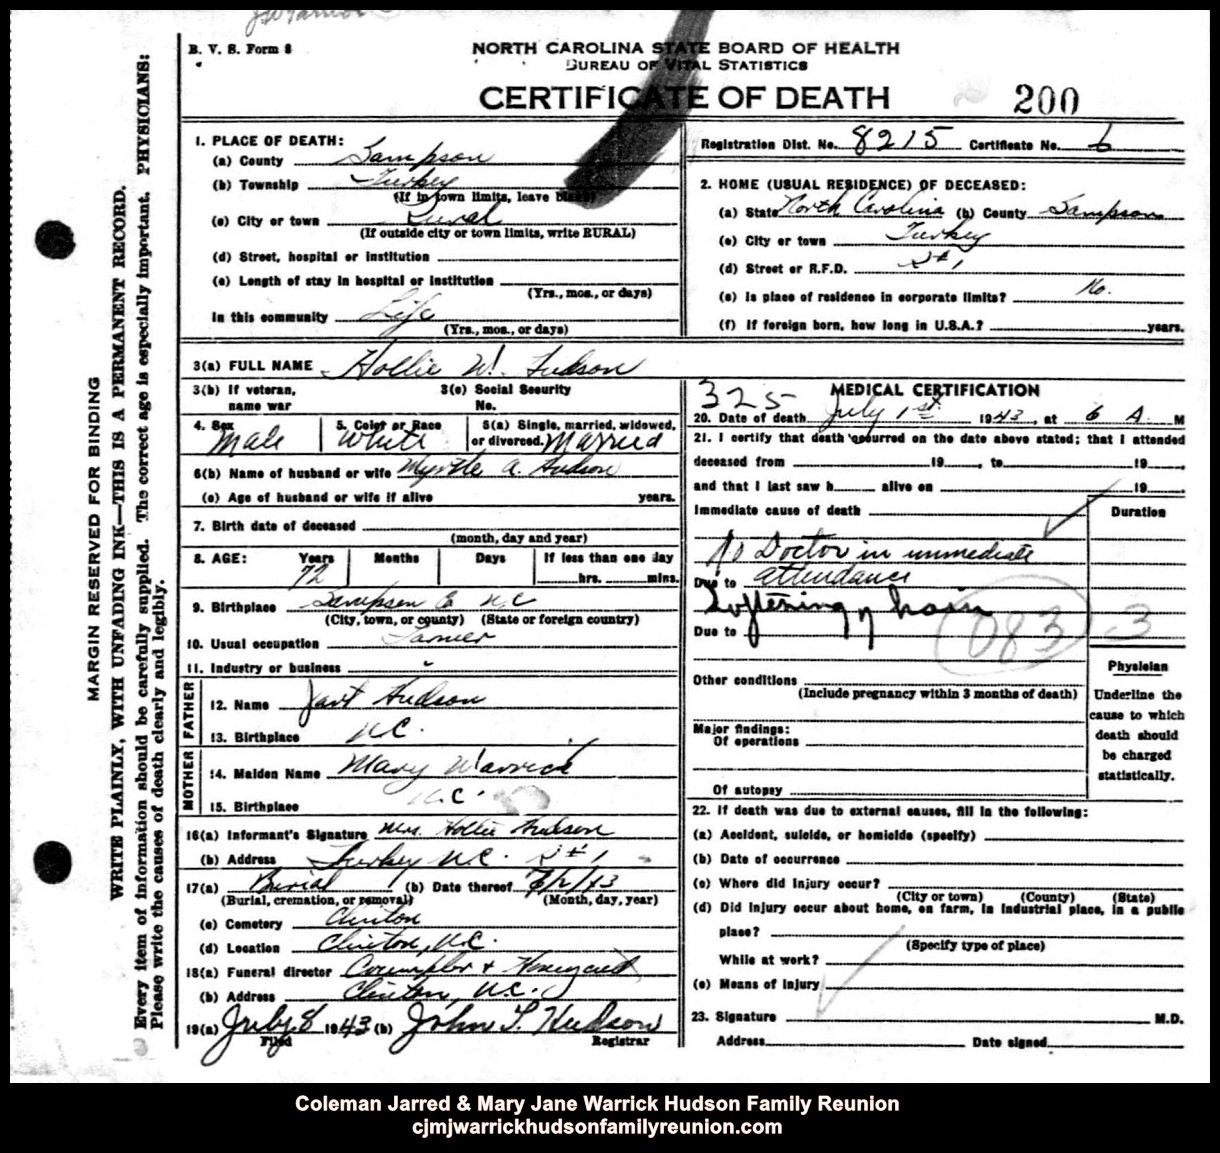 CJ & MJ - 1943, 7-1 - Death Certificate - Hollie W. Hudson